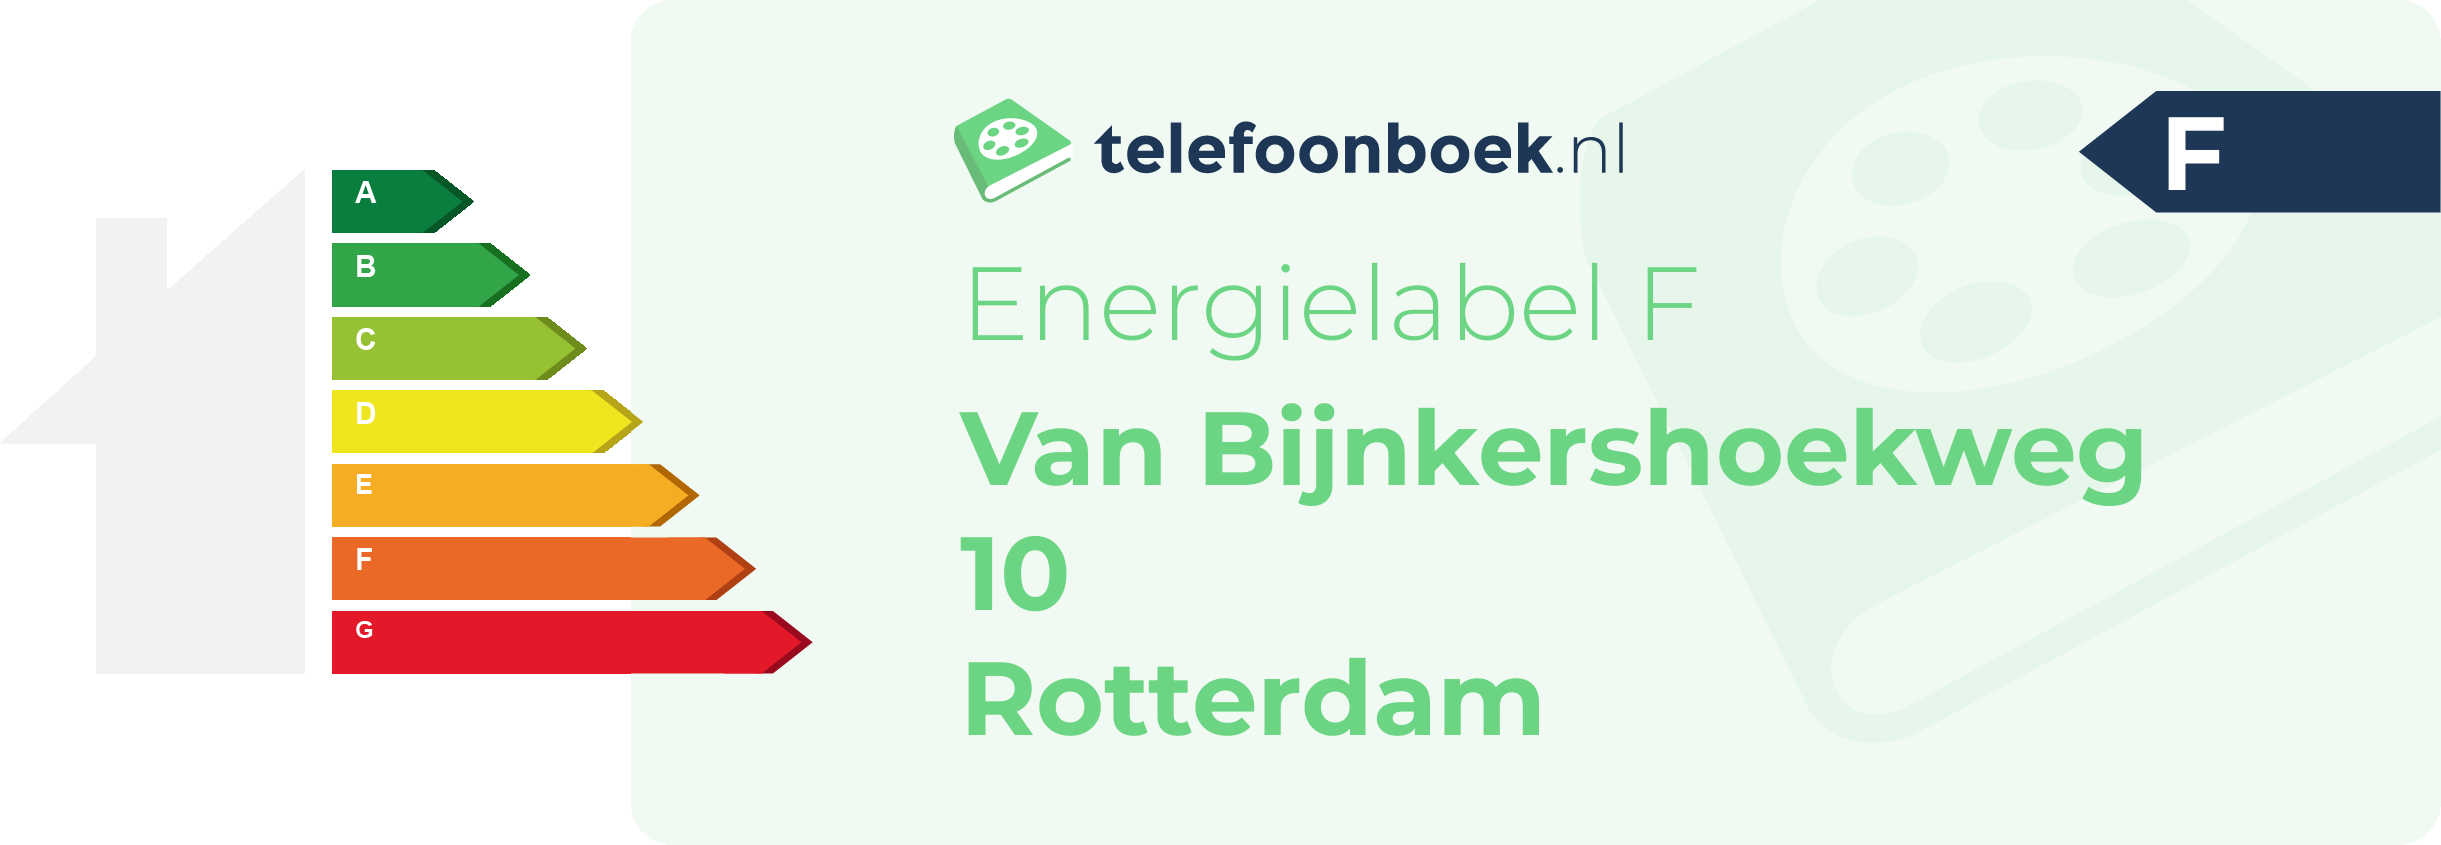 Energielabel Van Bijnkershoekweg 10 Rotterdam